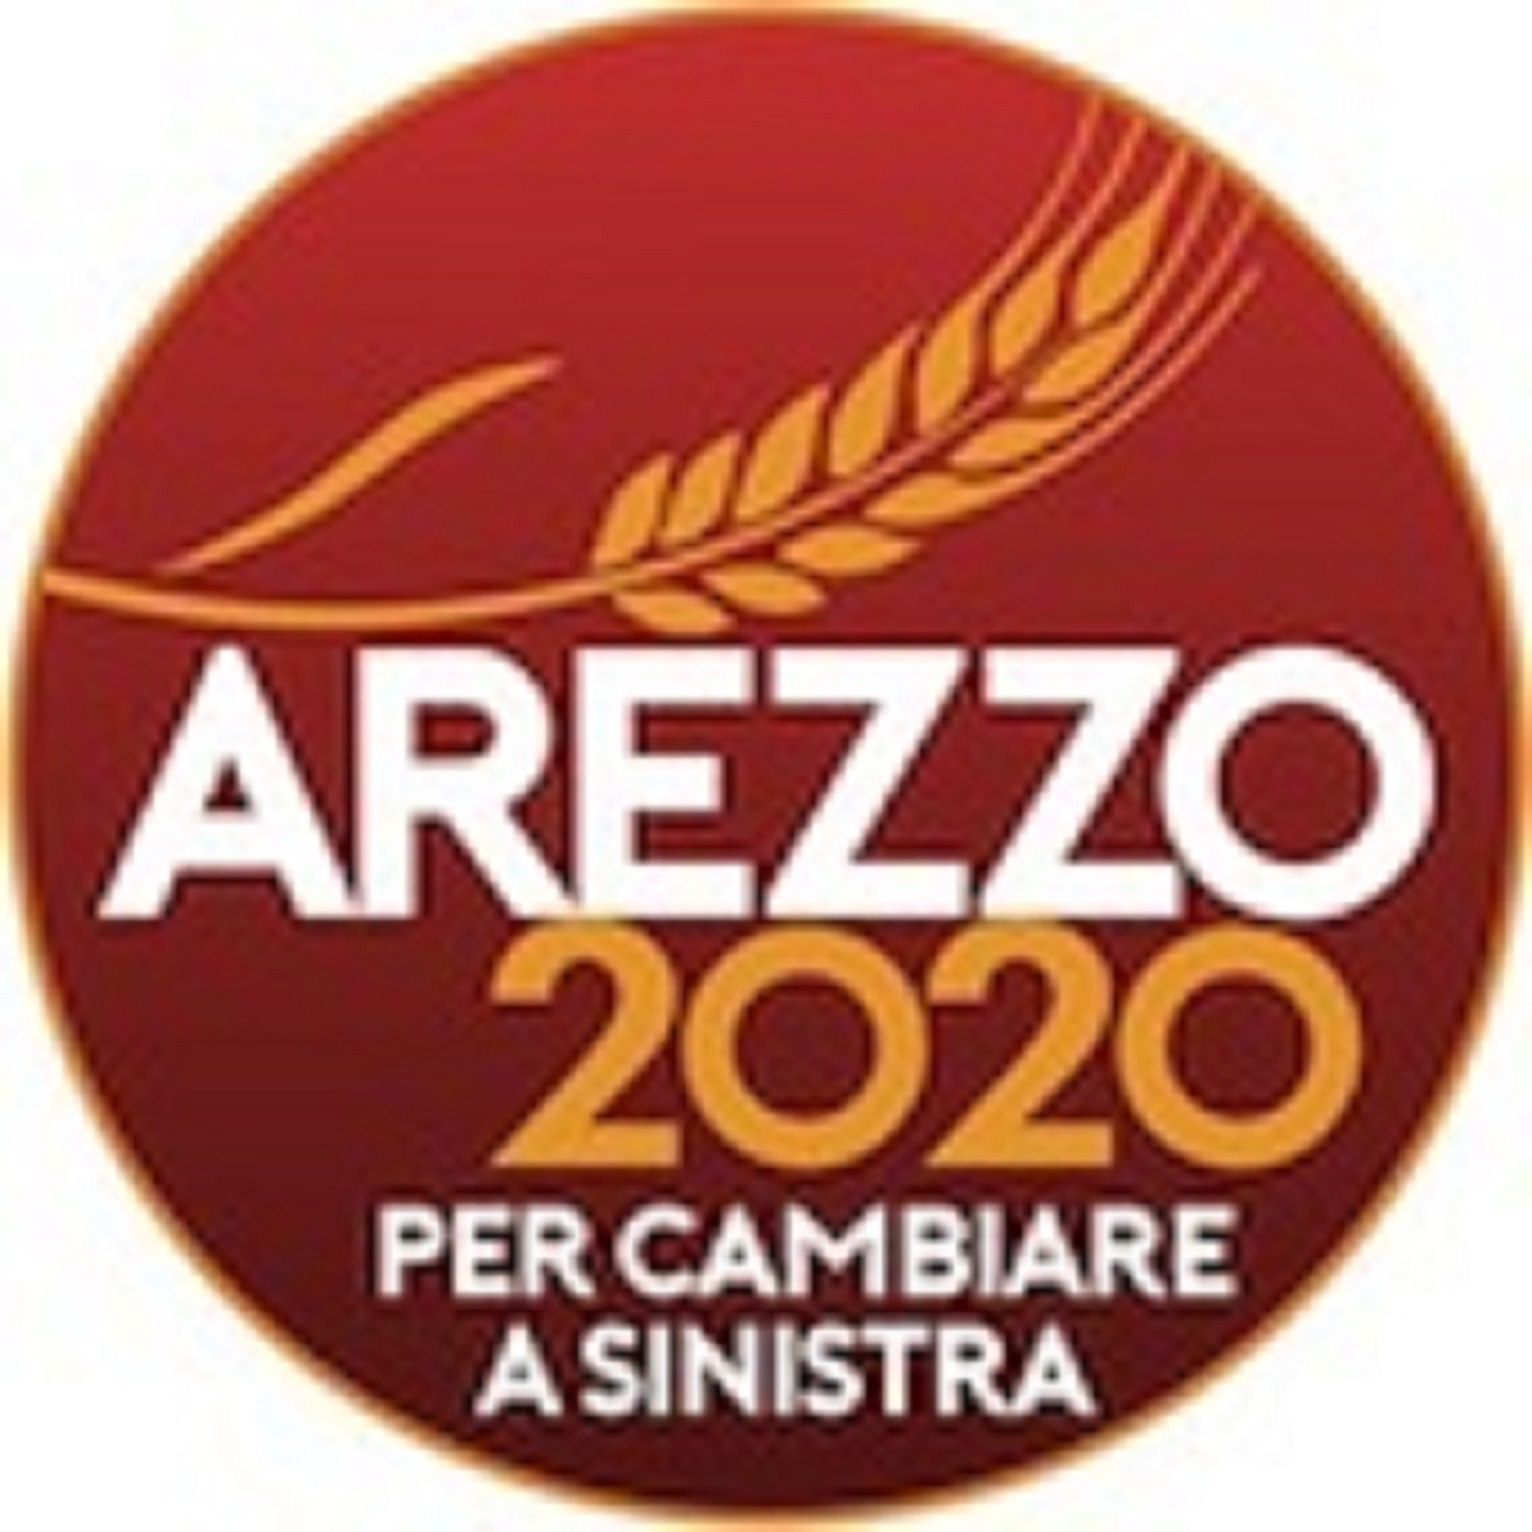 Screening bambini e ragazzi, Arezzo 2020: i tamponi rapidi sono la scelta giusta. Comune e Asl agiscano in sintonia e secondo i rispettivi ruoli